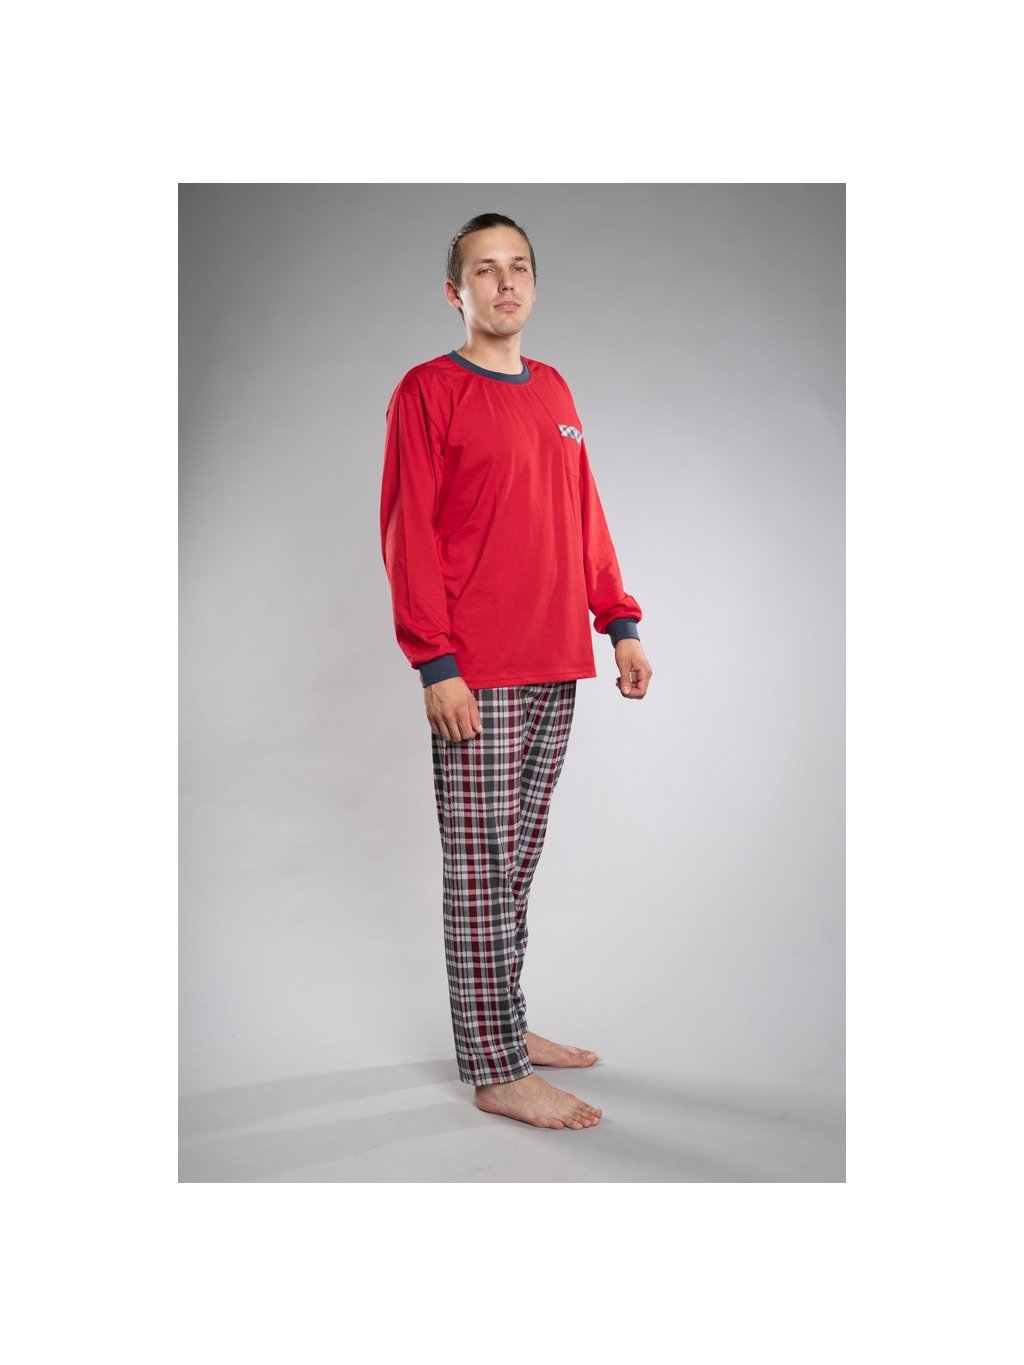 Pánské pyžamo dlouhý rukáv s kapsičkou (Barva červená, Velikost XXL)